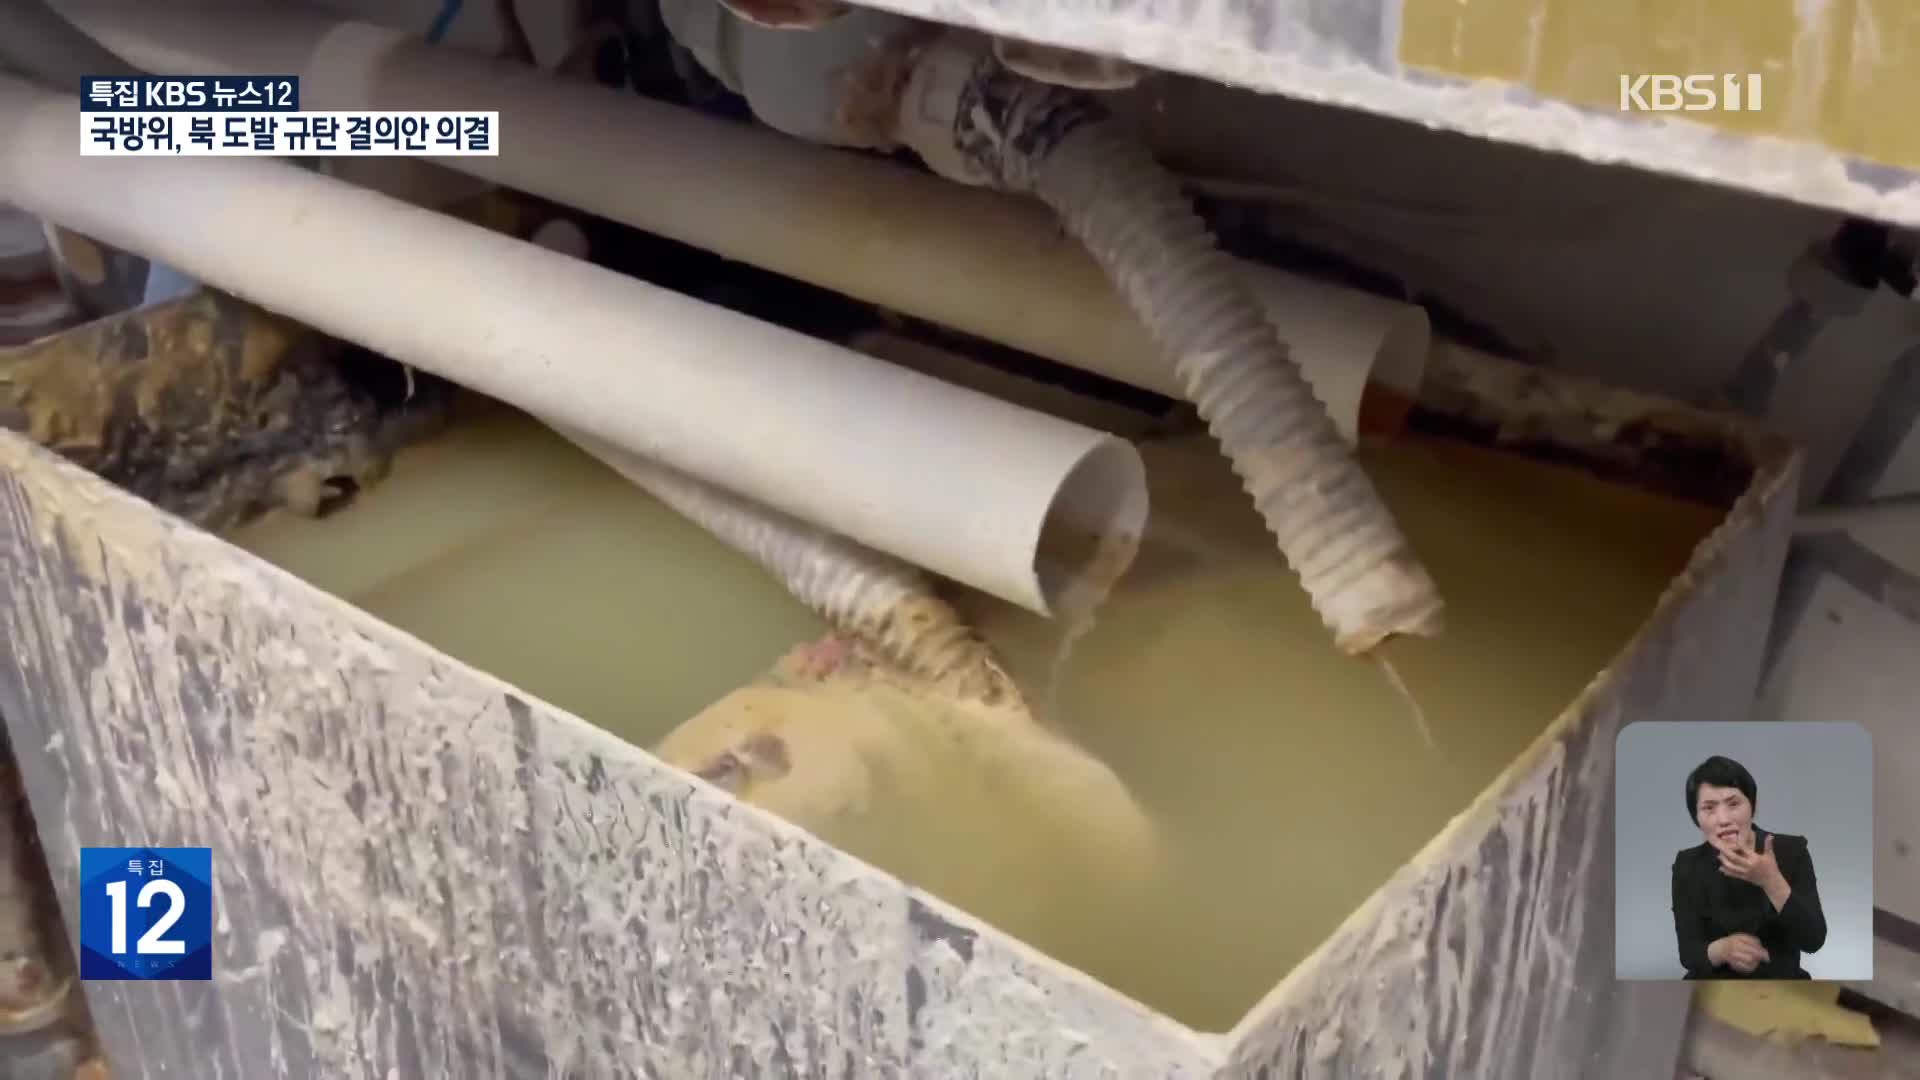 지식산업센터 소규모 공장 폐수 무단 방류 심각